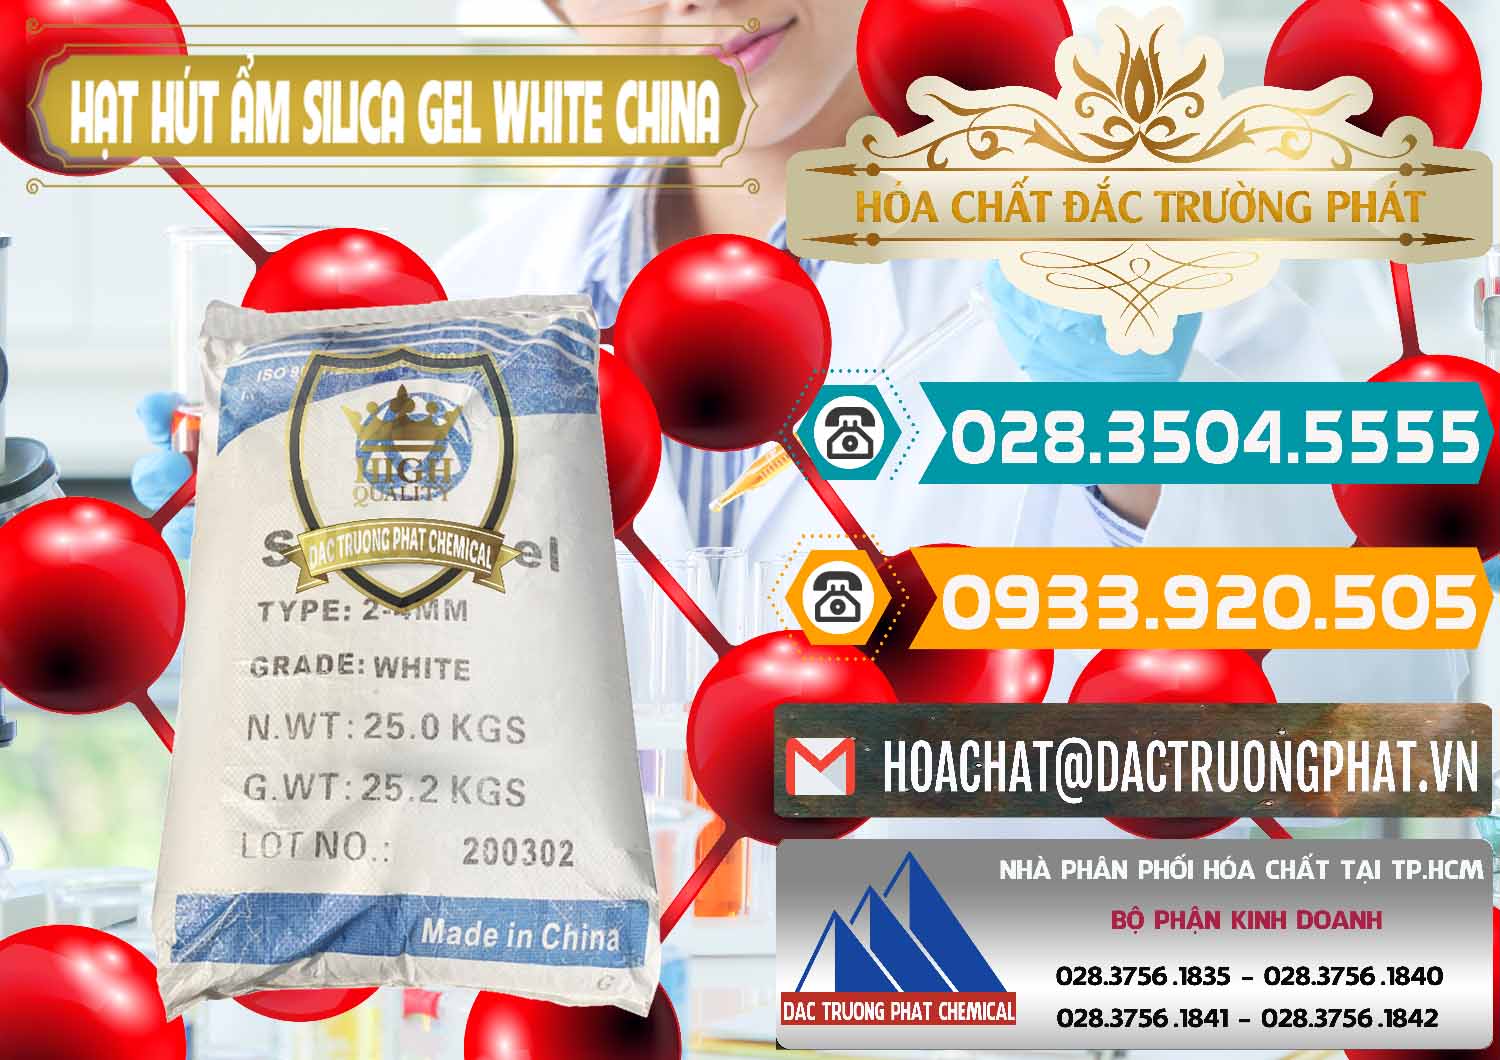 Cty chuyên kinh doanh ( bán ) Hạt Hút Ẩm Silica Gel White Trung Quốc China - 0297 - Nhà phân phối ( cung cấp ) hóa chất tại TP.HCM - congtyhoachat.vn